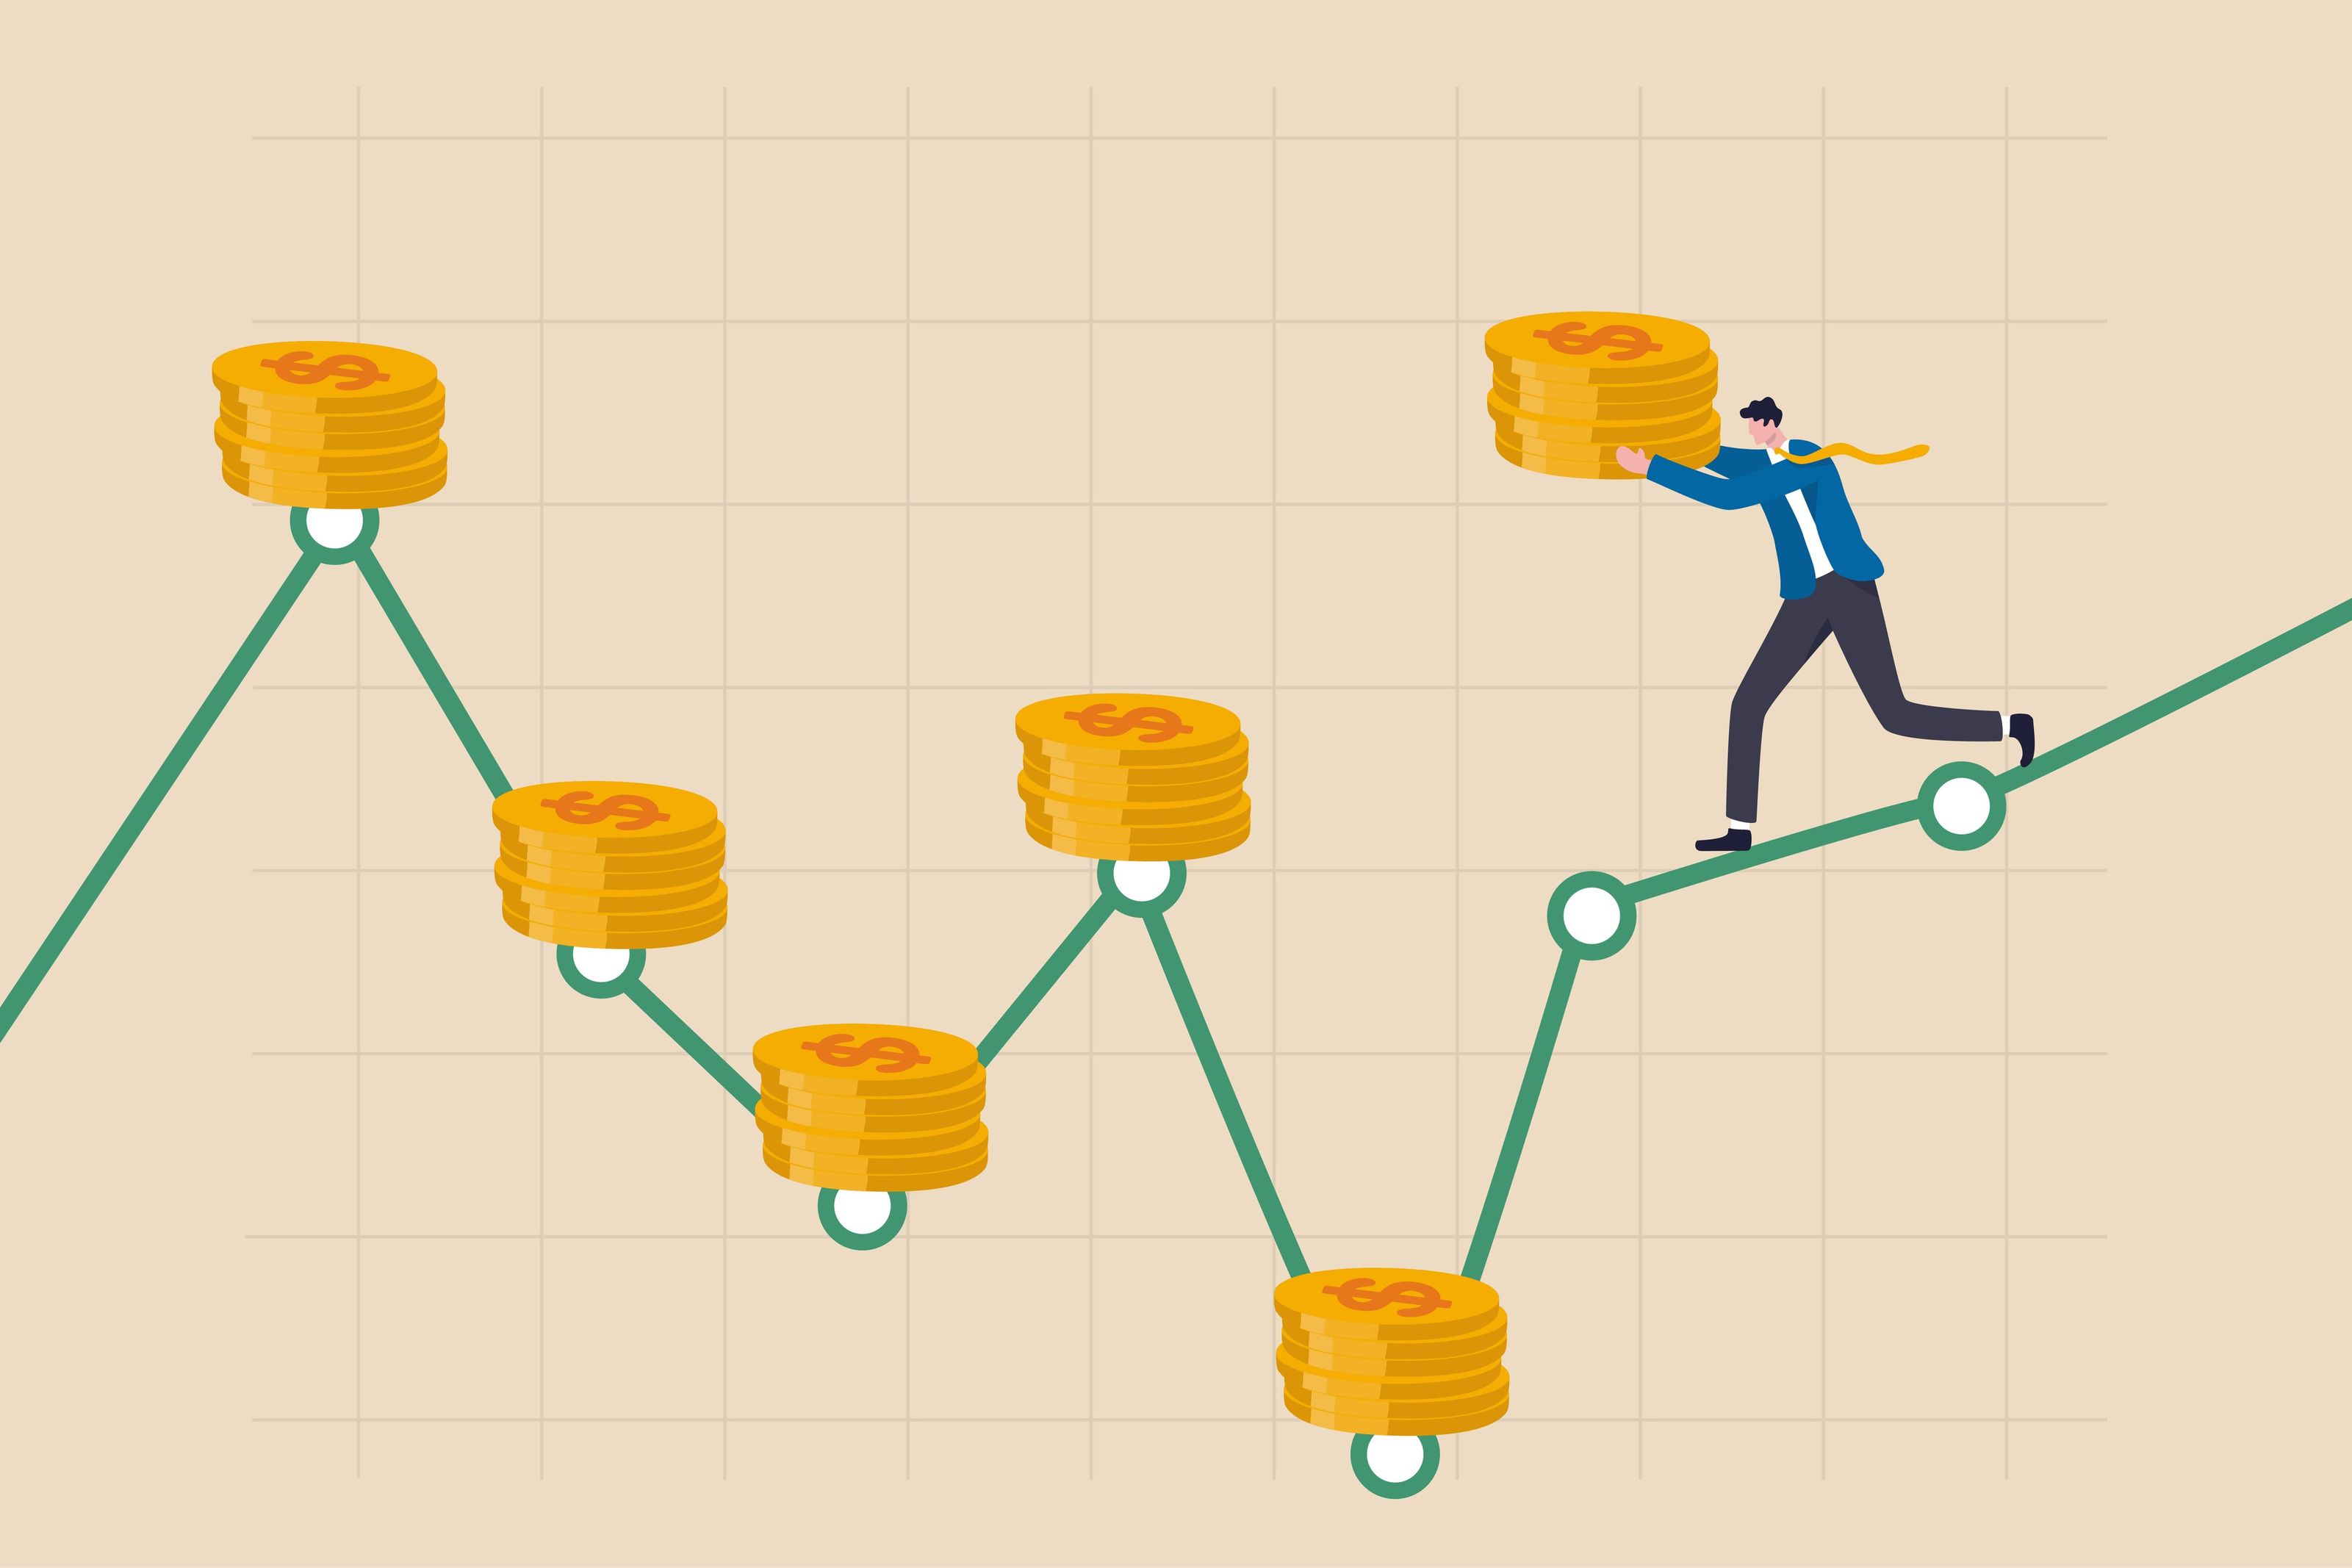 Auswahl einer Anlagestrategie zwischen Dollar-Cost-Averaging und Einmalanlage, dargestellt mit dem Bild eines Cartoon-Mannes, der einen Stapel Goldmünzen trägt und auf einem grünen Diagramm läuft, das die Anlagezeiträume anzeigt